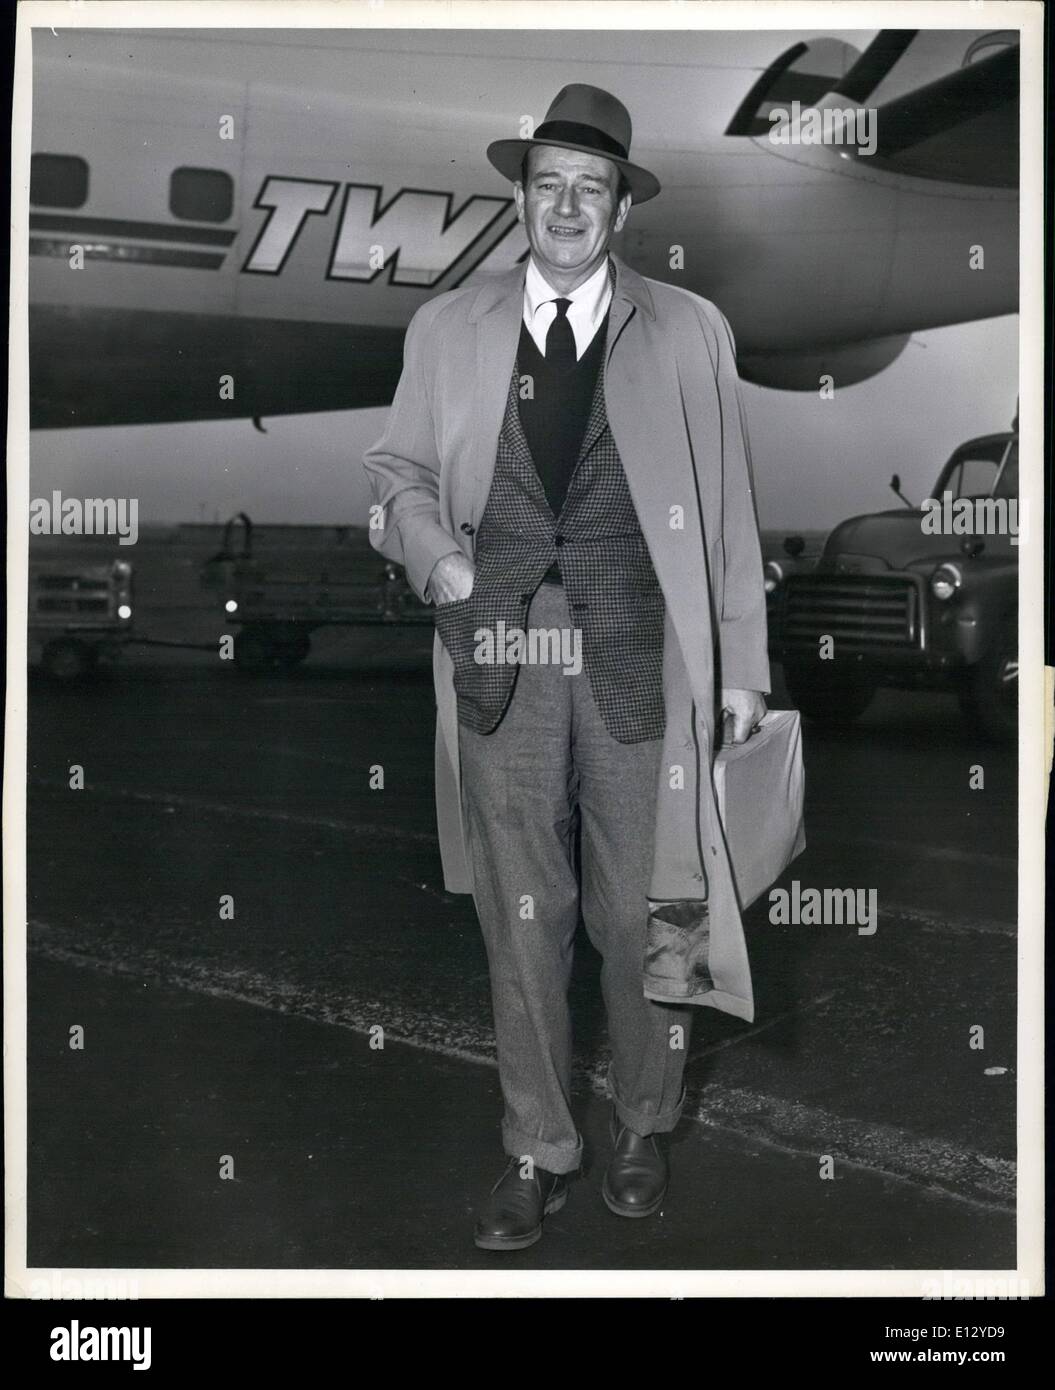 26. Februar 2012 - Schritte beliebte Filmschauspieler, John Wayne, zügig entlang nach seiner Ankunft an Bord einer TWA-Super-g-Konstellation von Paris. "Duke", hat wie er liebevoll genannt wird, gerade eine Förderung der Film '' The Conqueror'', ein Rko-Film produziert von Howard Hughes europäischen persönliches erscheinen-Tour abgeschlossen. Mr Wayne besucht Rom, Berlin, London und Paris. Er verließ Chicago von TWA kurz nach seiner Ankunft. Stockfoto